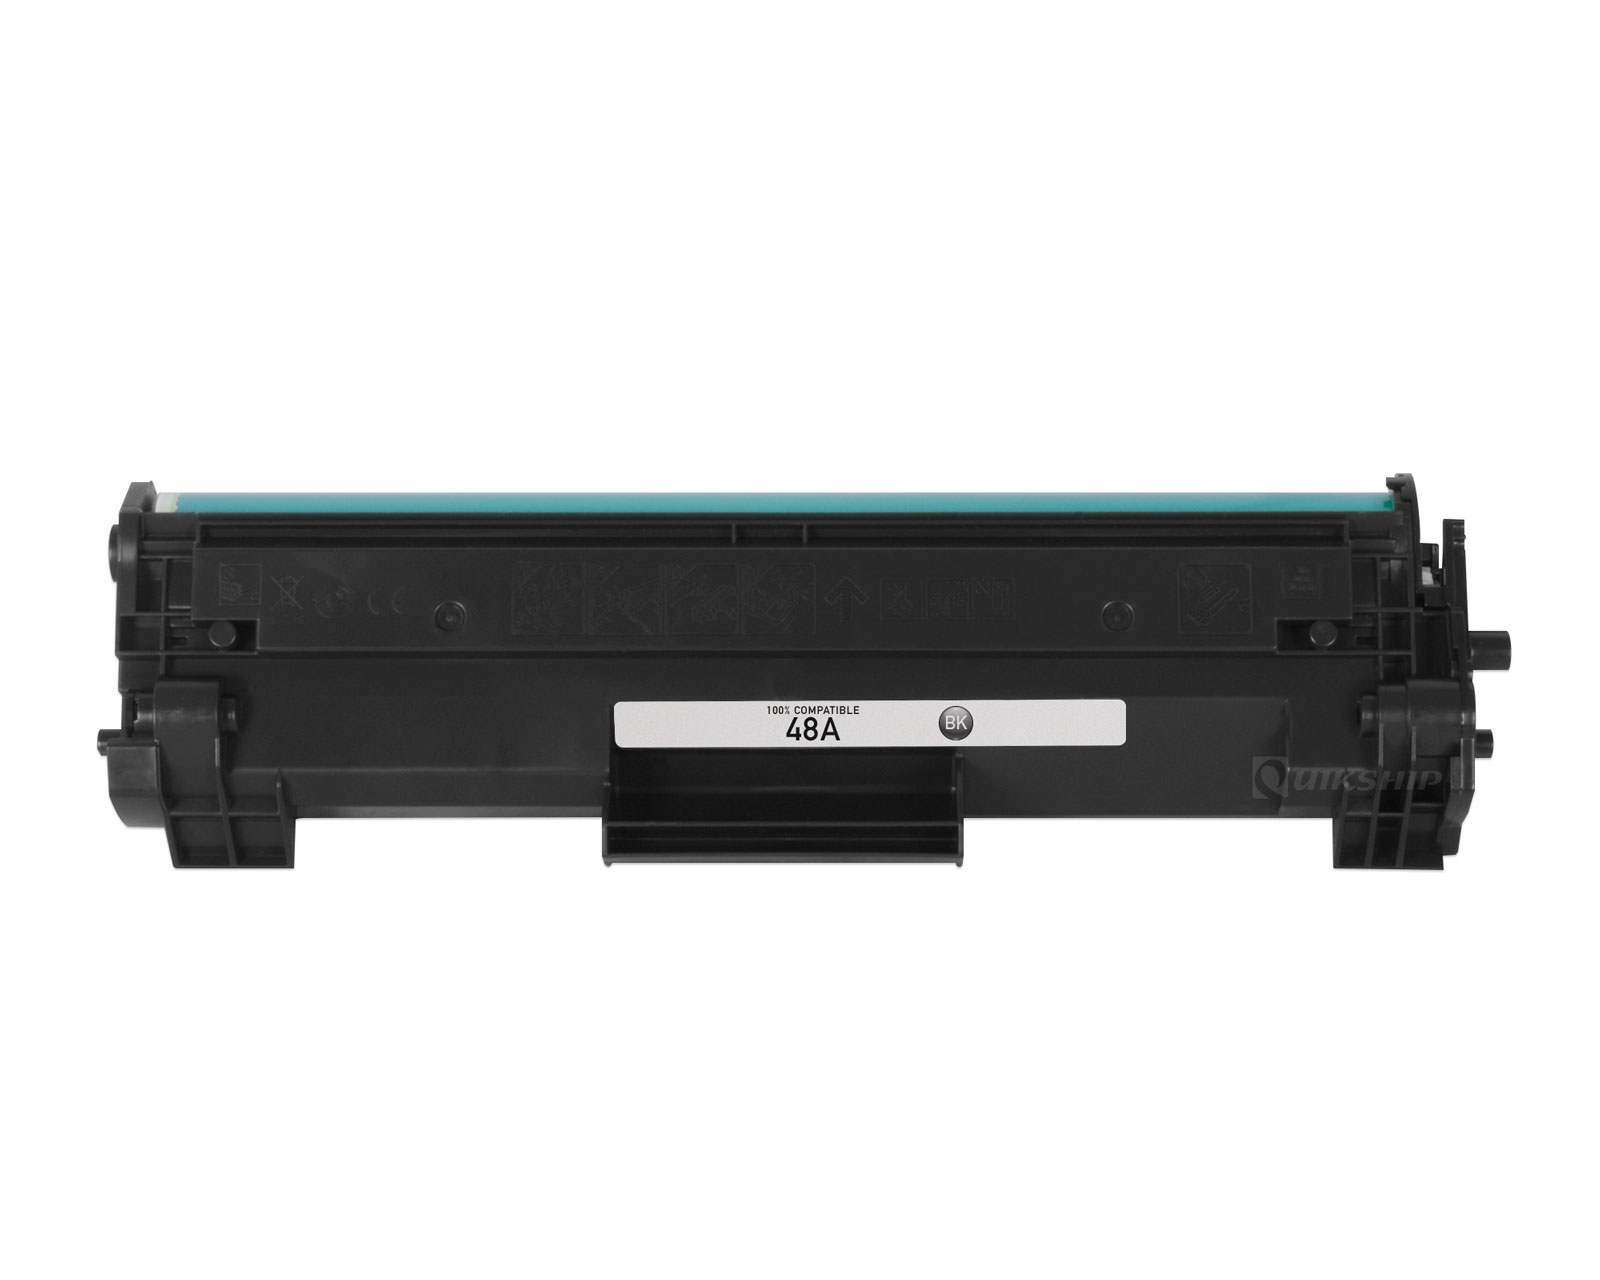 Inhalen Ru Van HP LaserJet Pro M15w Toner Cartridge - 1,000 Pages - QuikShip Toner